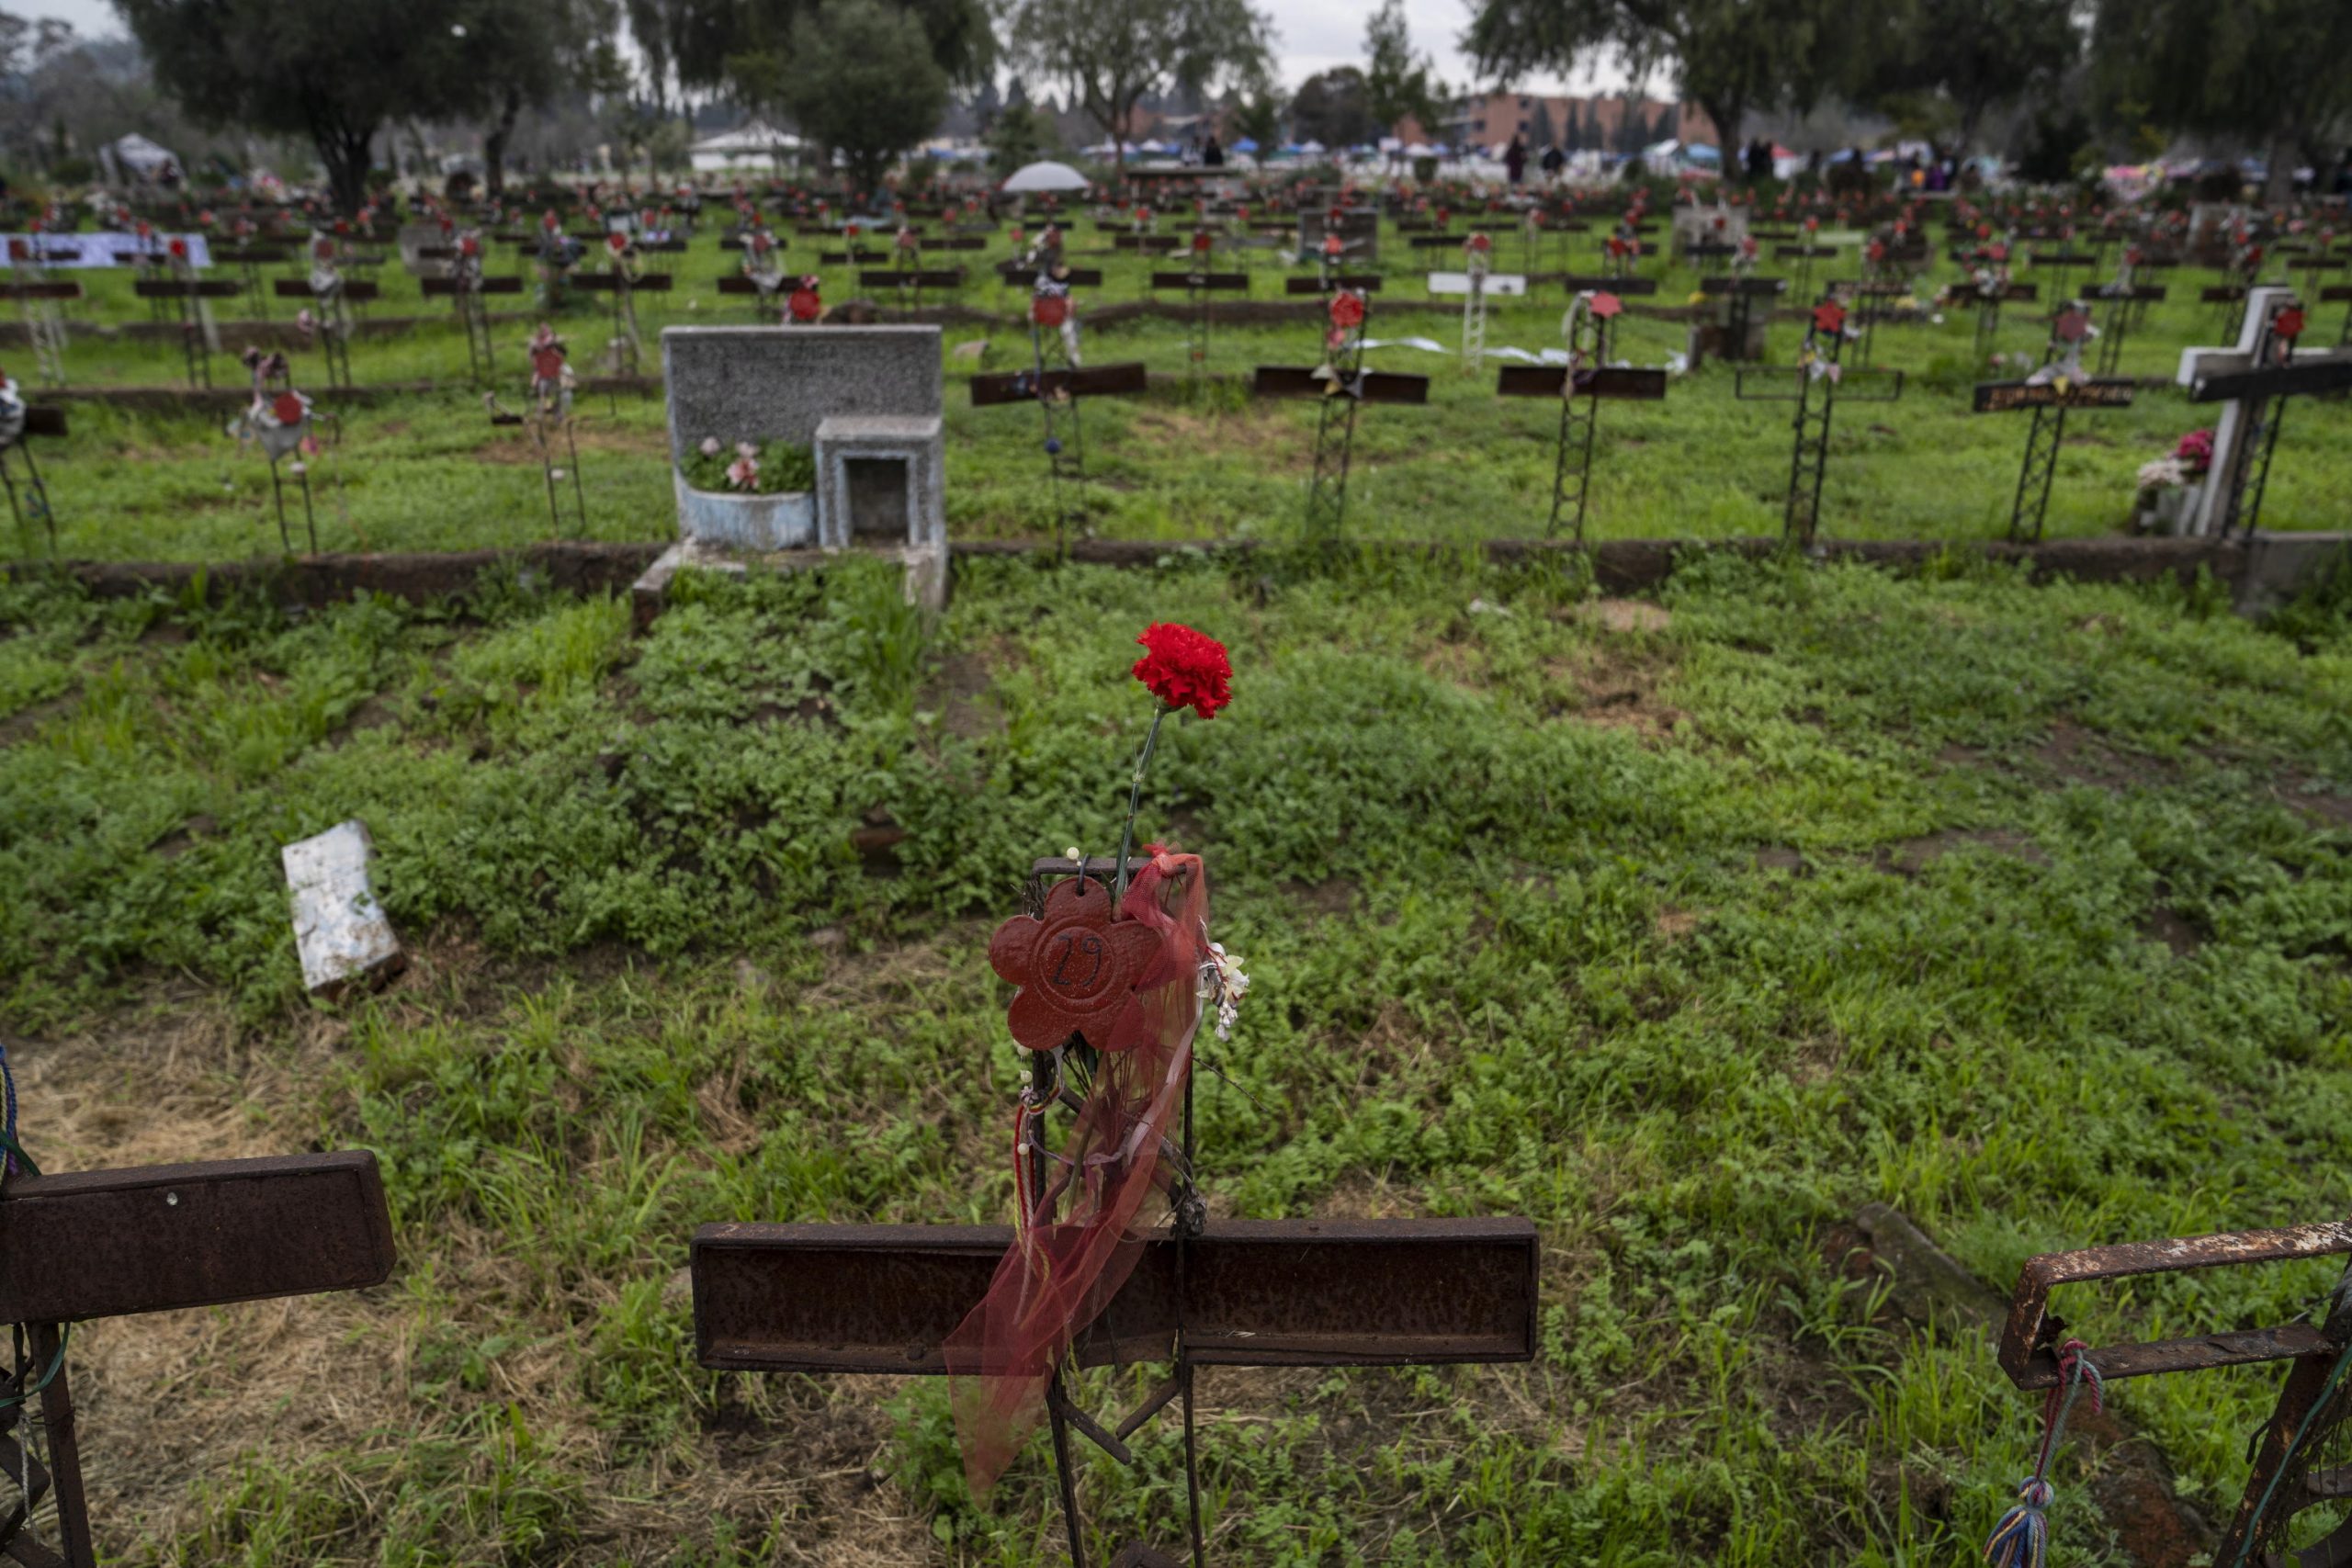 Patio 29 del Cimitero Generale in cui il regime militare seppelliva le sue vittime